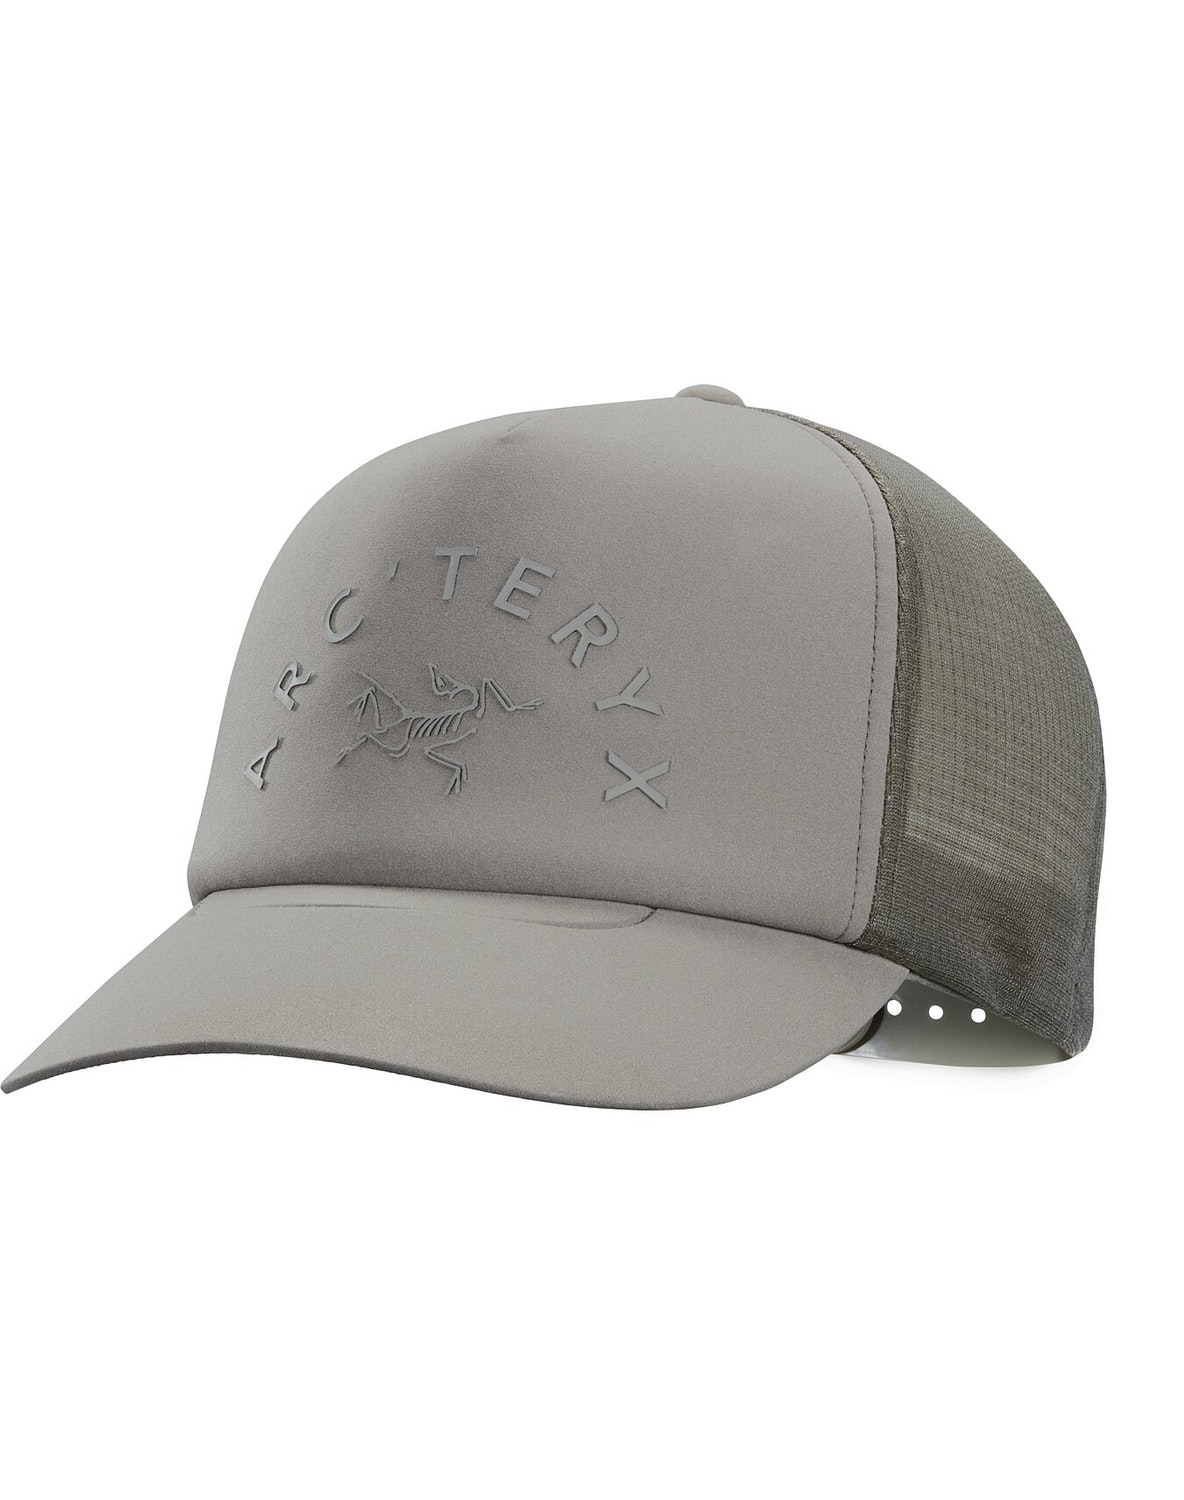 Hats Arc'teryx Arch'teryx Curved Brim Uomo Marroni Chiaro - IT-646533